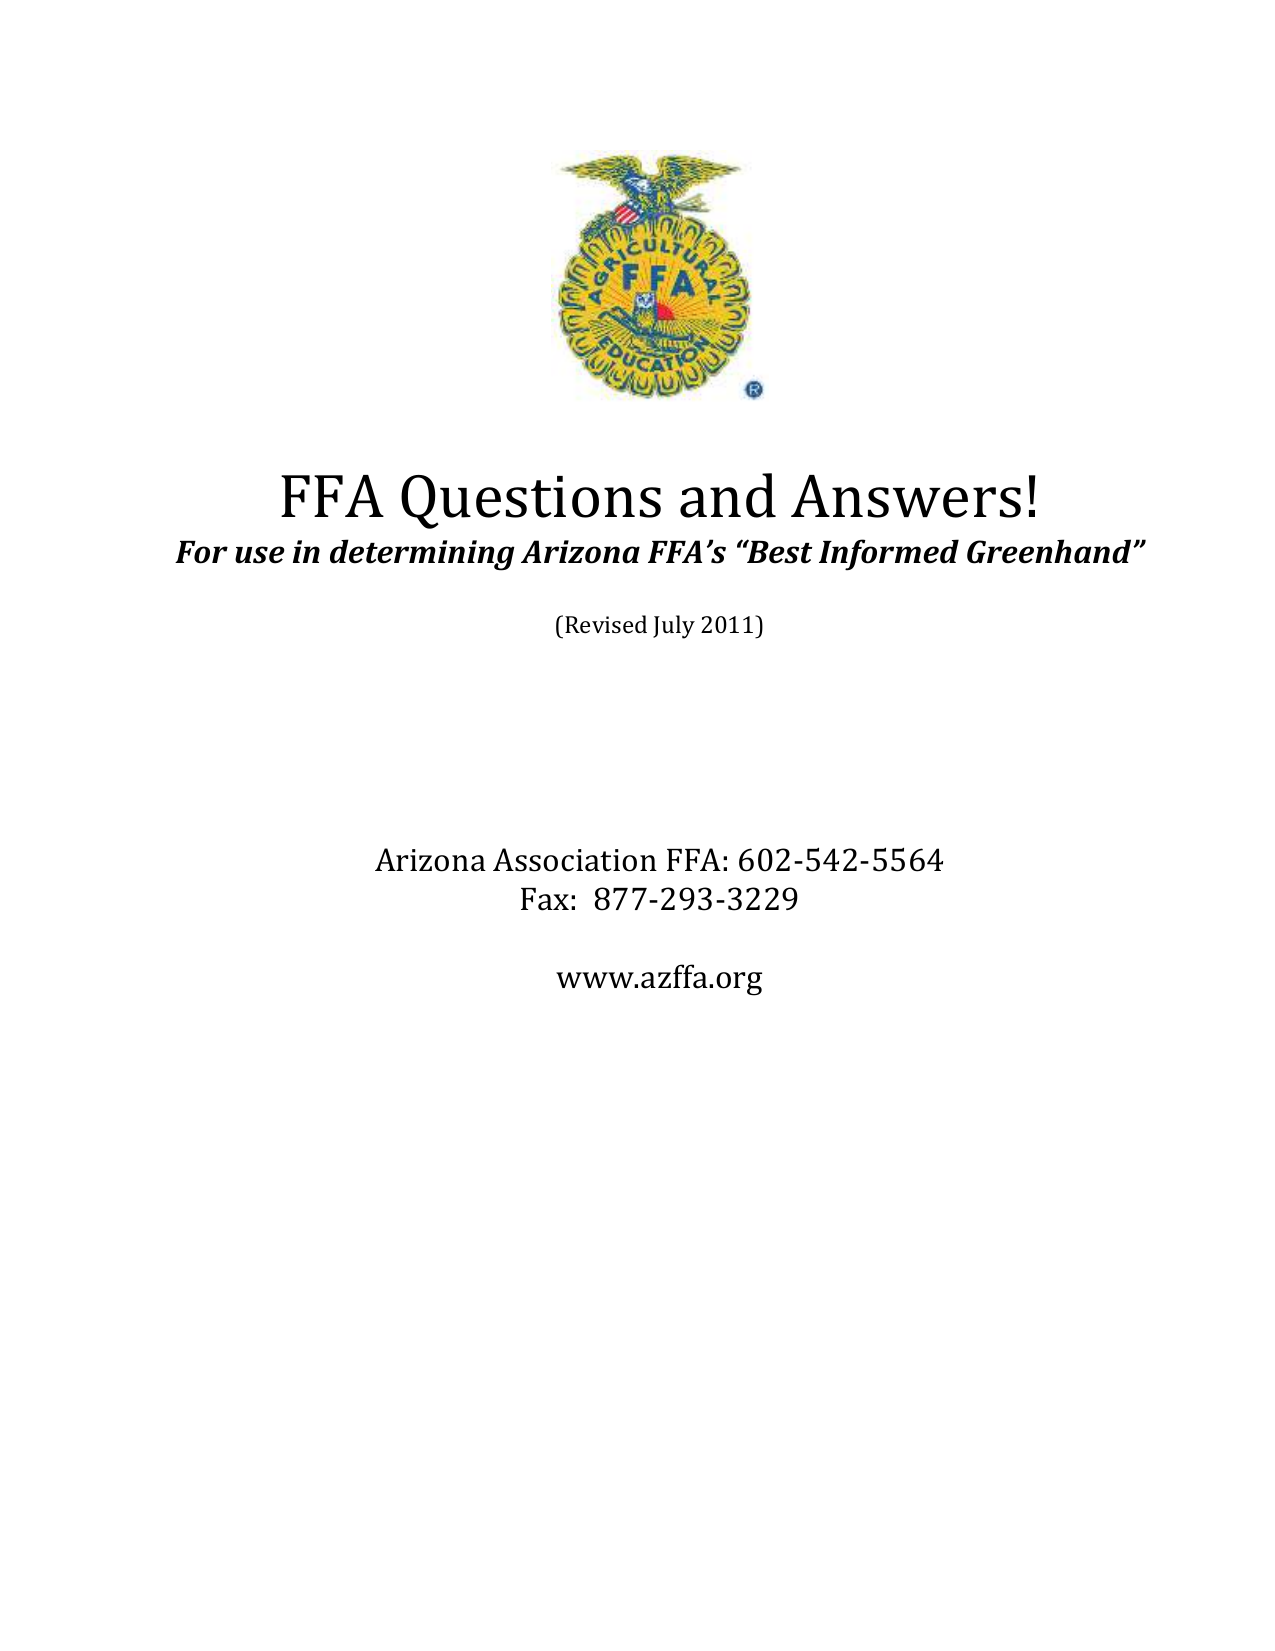 ffa-questions-and-answers-rev-azffa